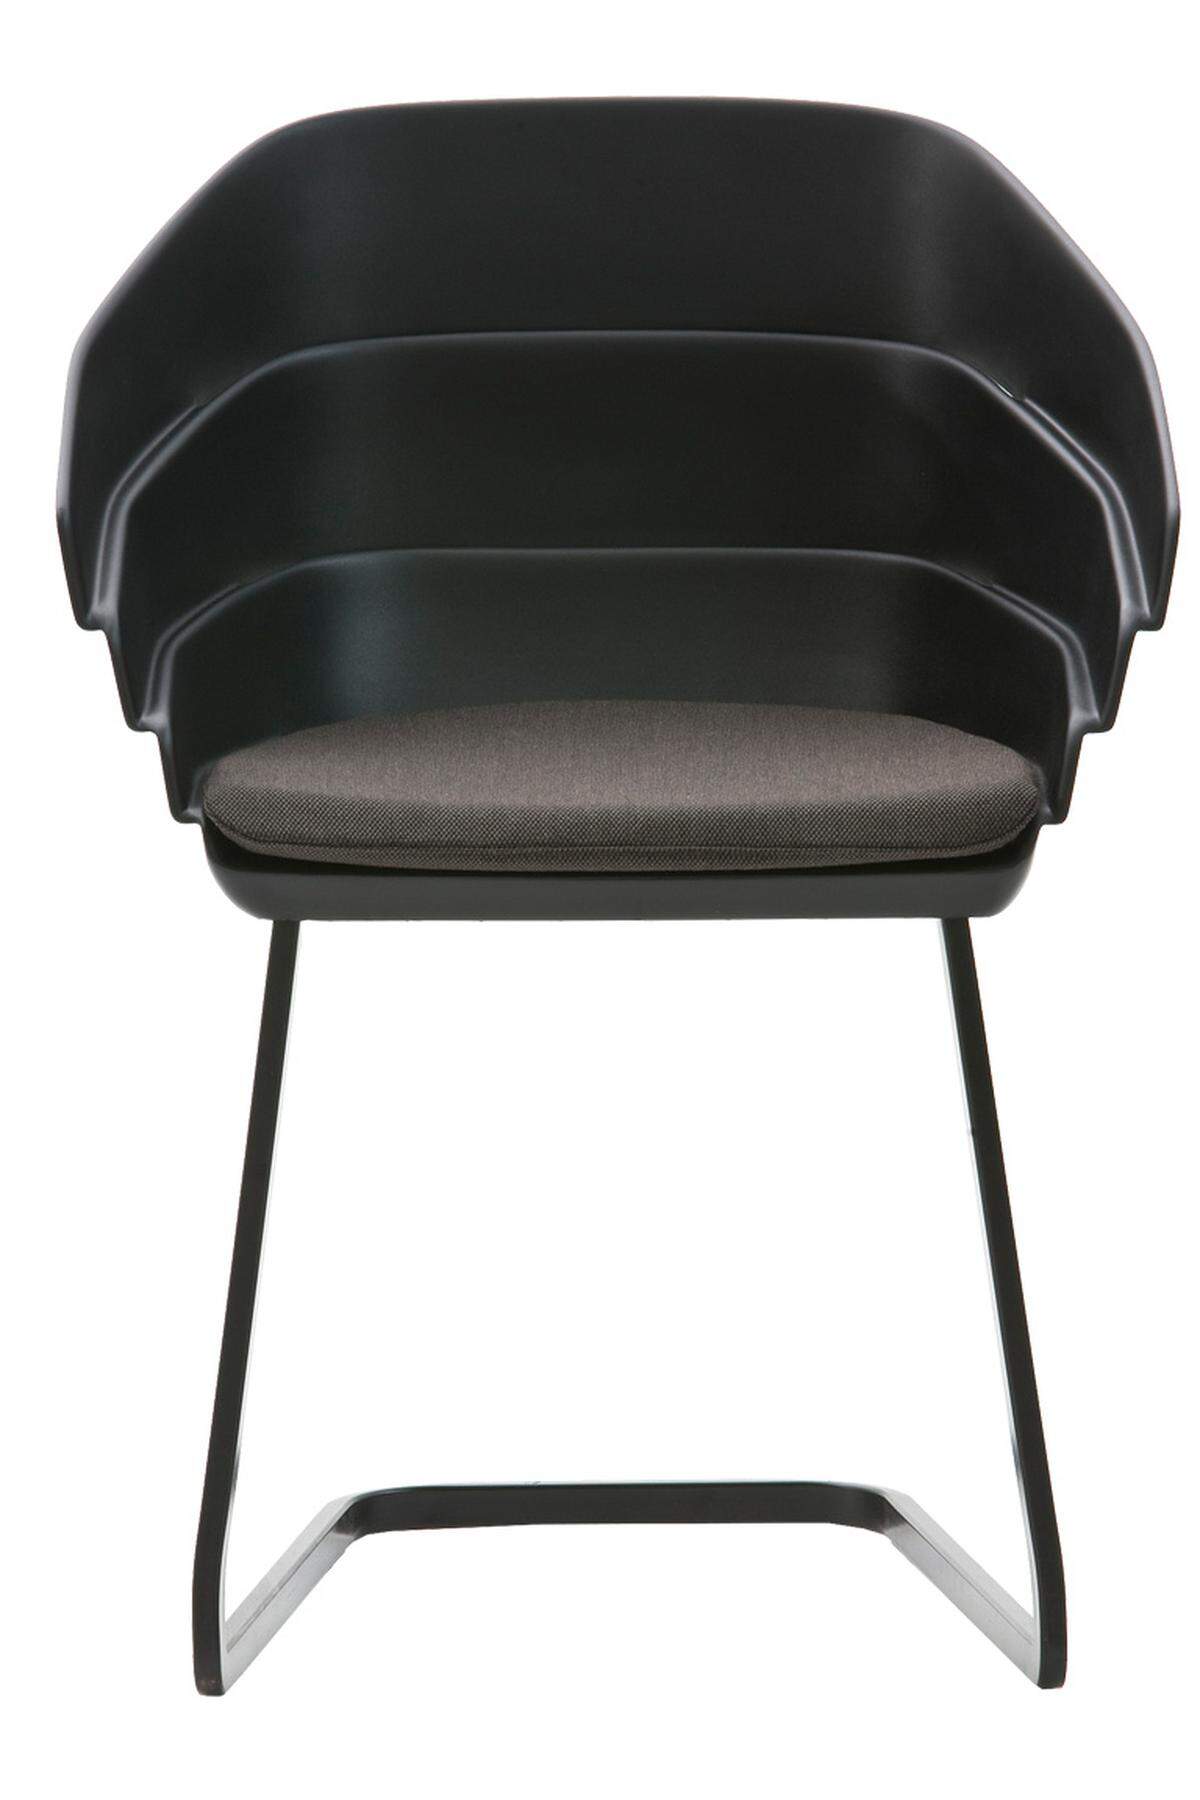 „Rift Chair“ von Moroso, mit einer Sitzschale wie übereinandergeschobene tektonische Platten. www.moroso.com